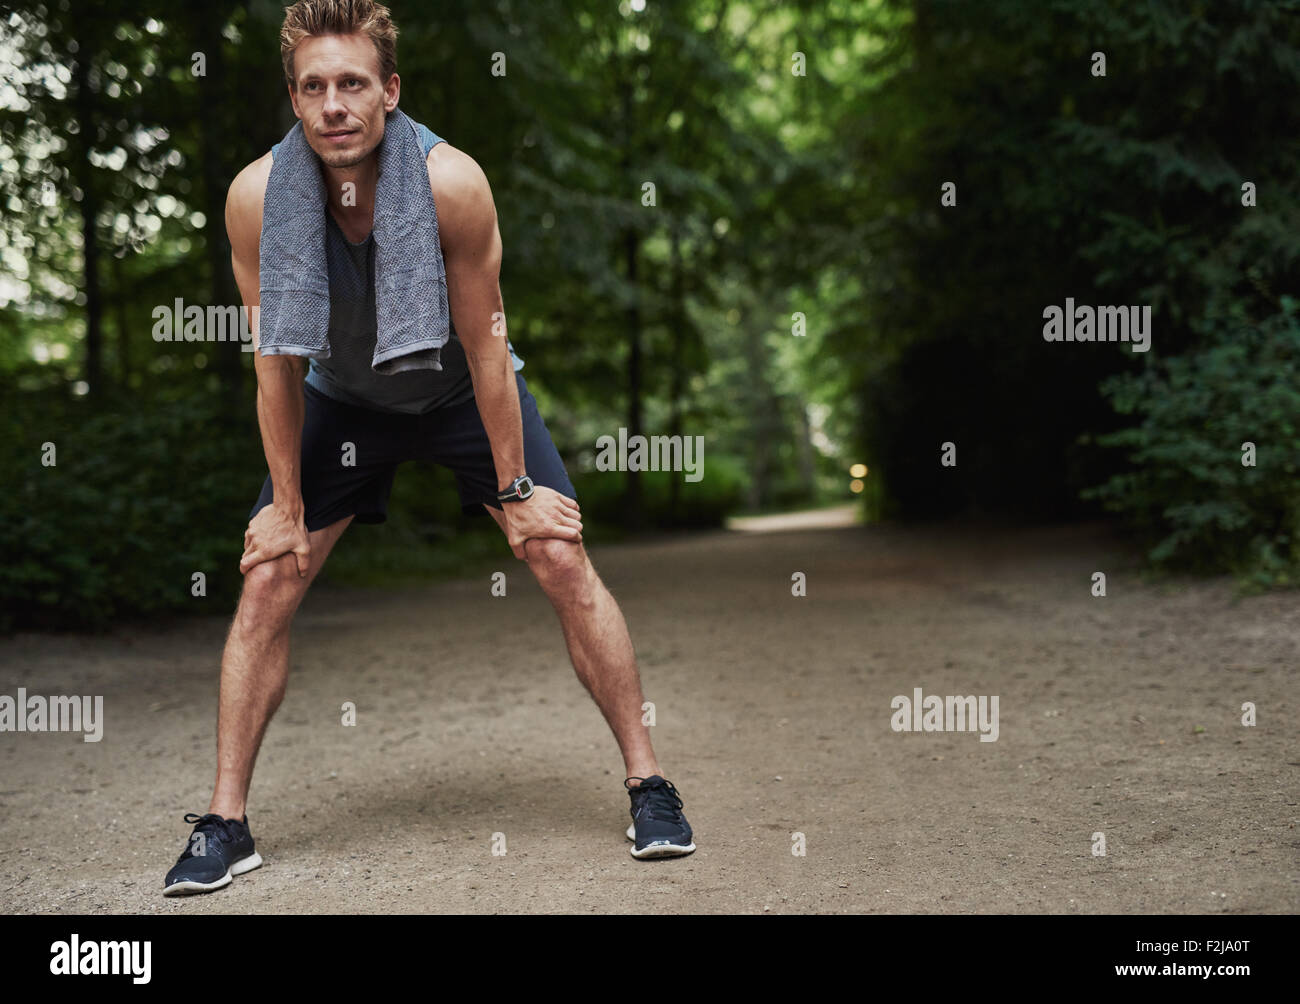 Passen Sie junge Mann hält seine Knie während ruht nach ein laufen Übung im Park. Stockfoto